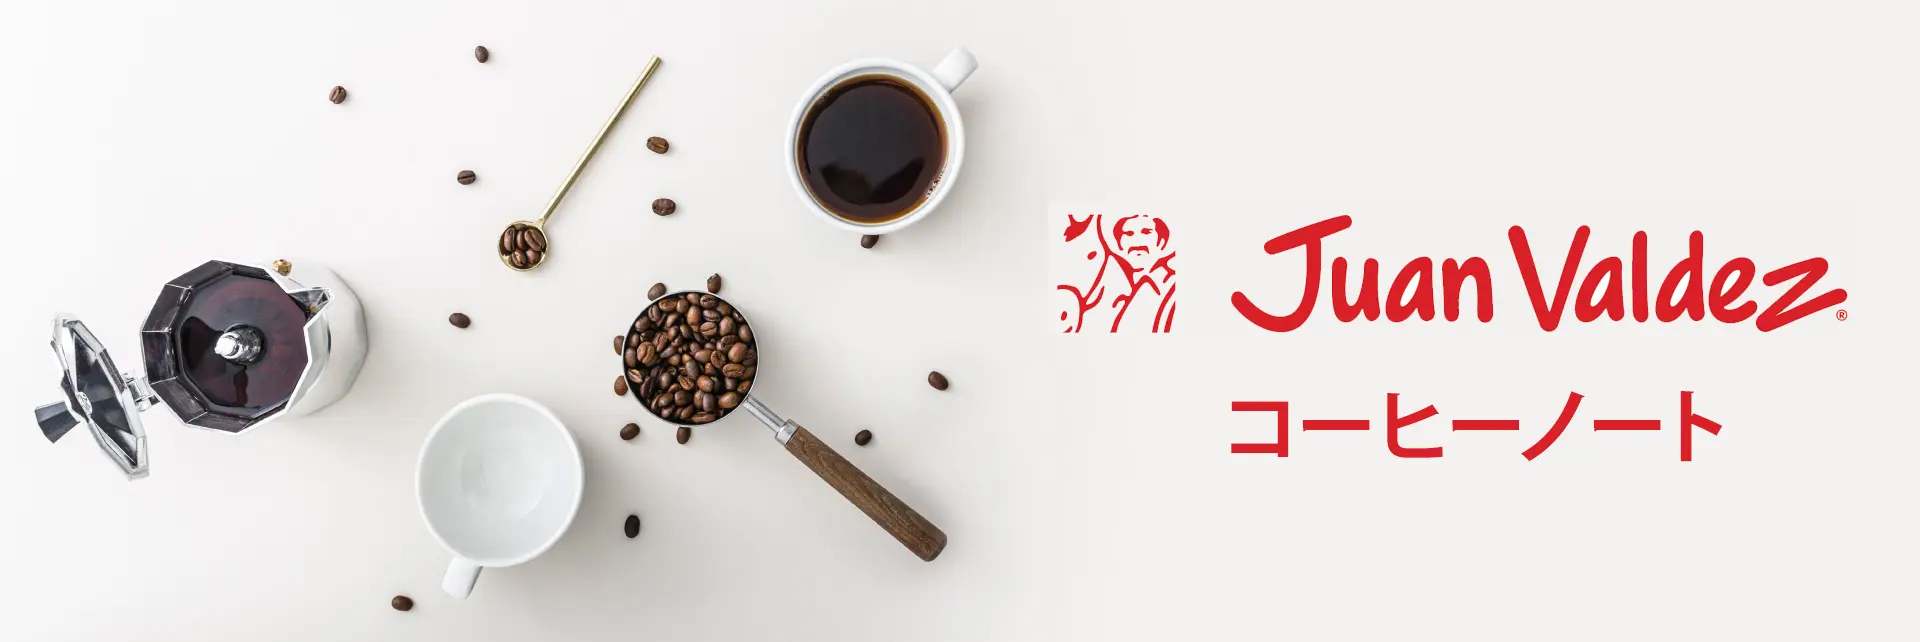 フアン・バルデスコーヒーのブログヘッダー画像、コーヒーカップと豆